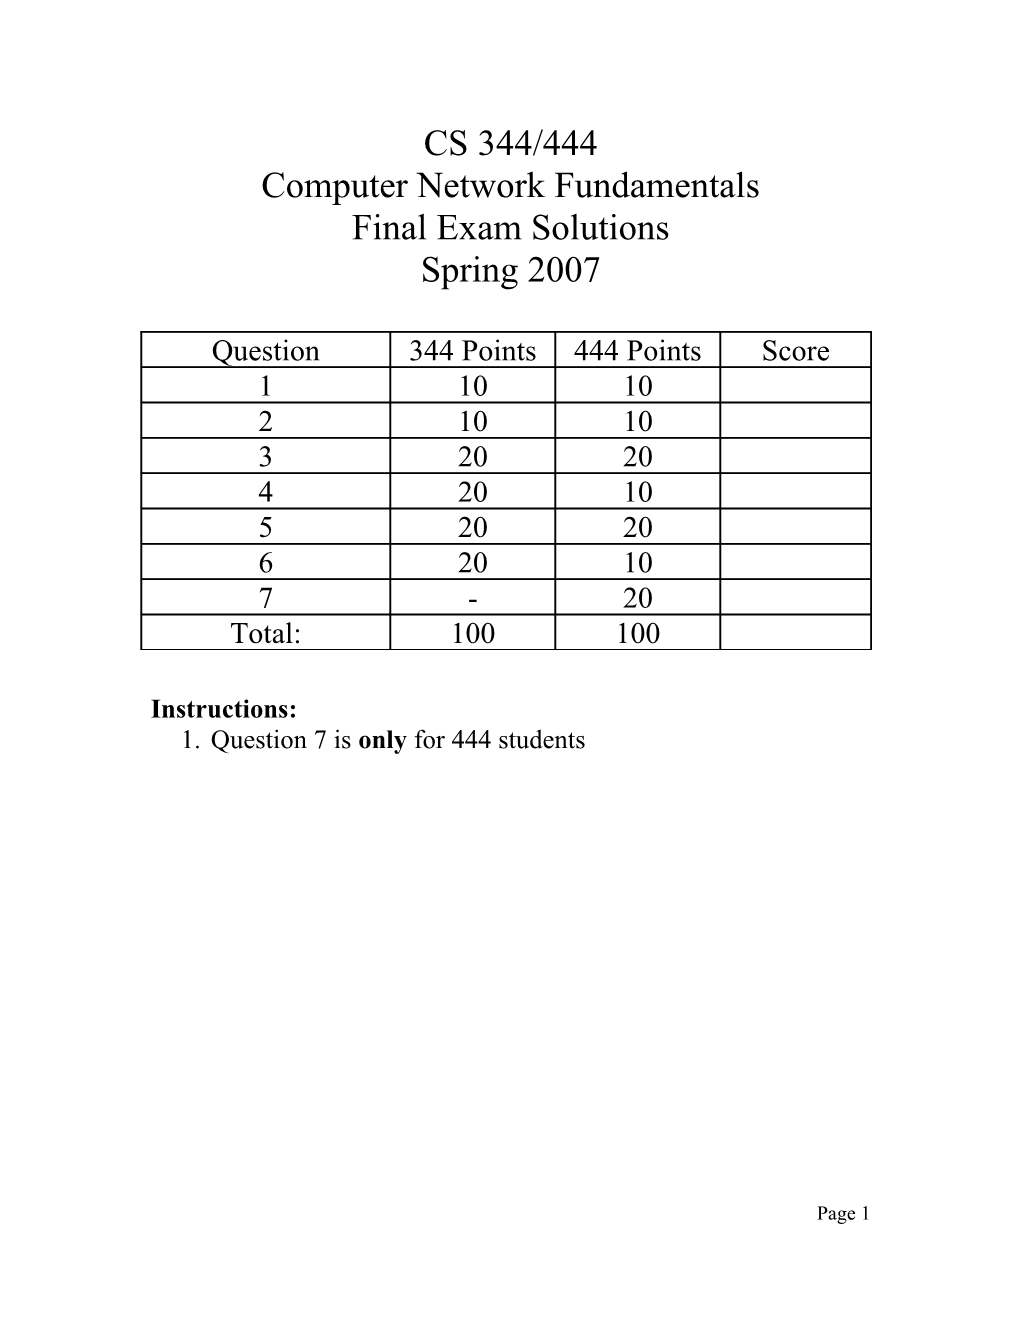 Computer Network Fundamentals